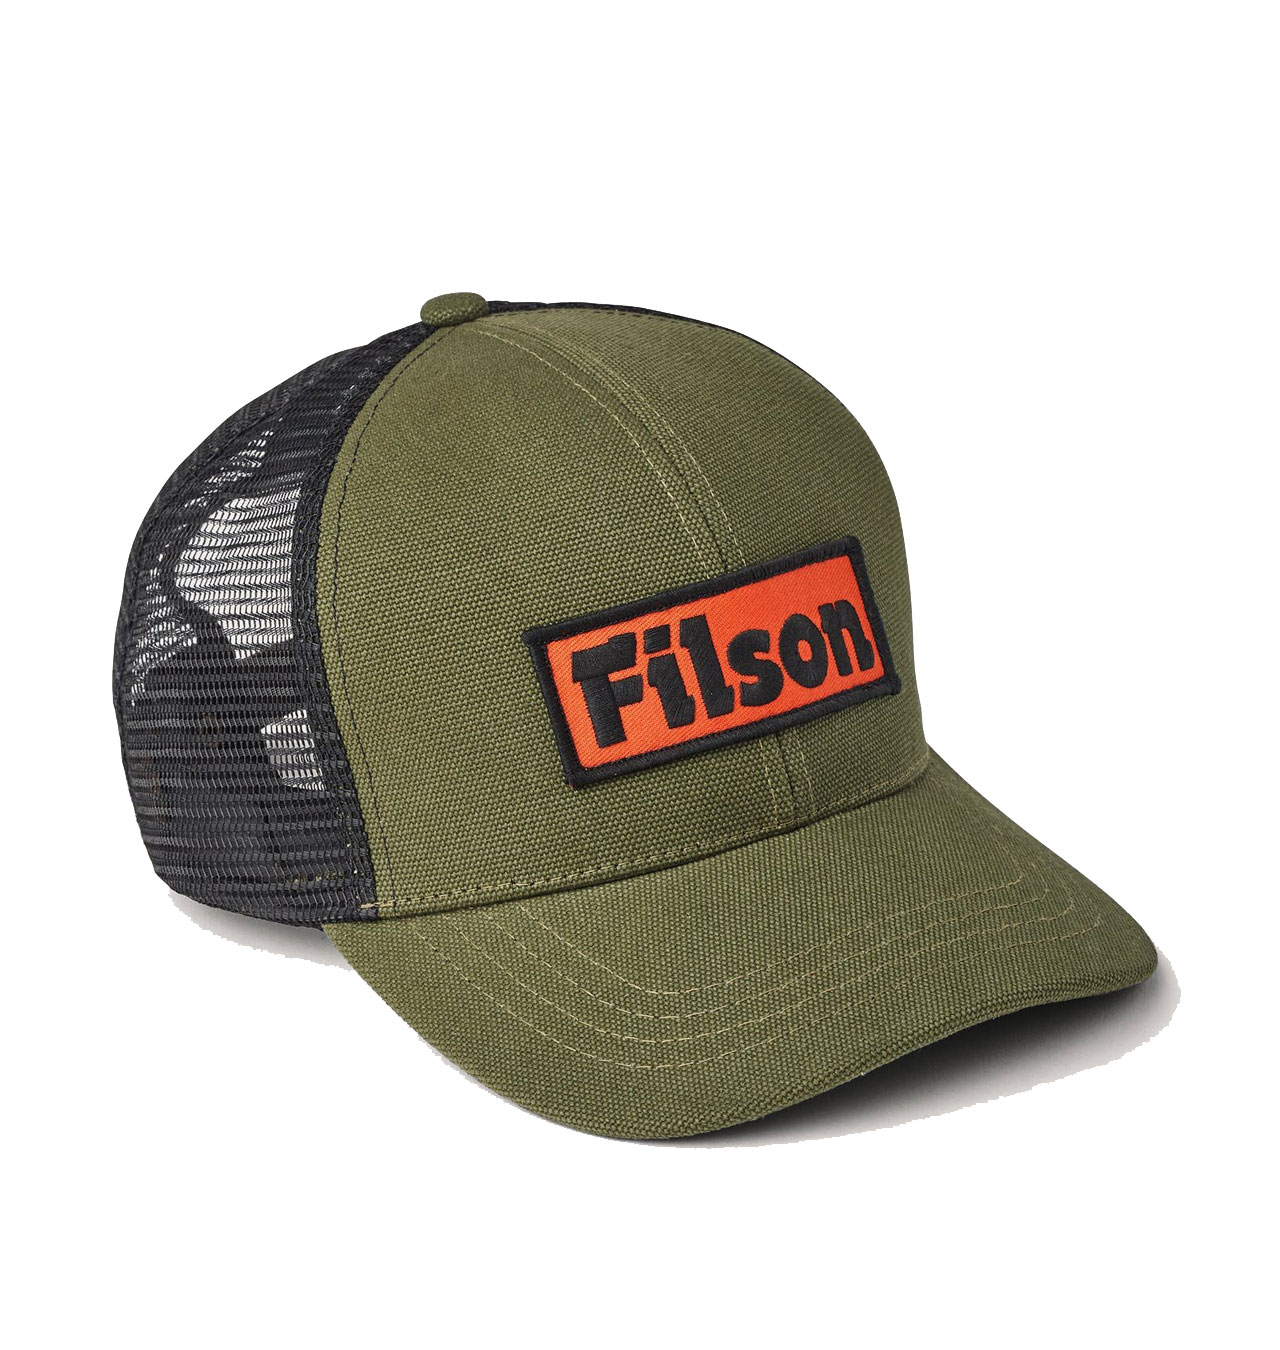 Filson - Mesh Logger Cap - Olive